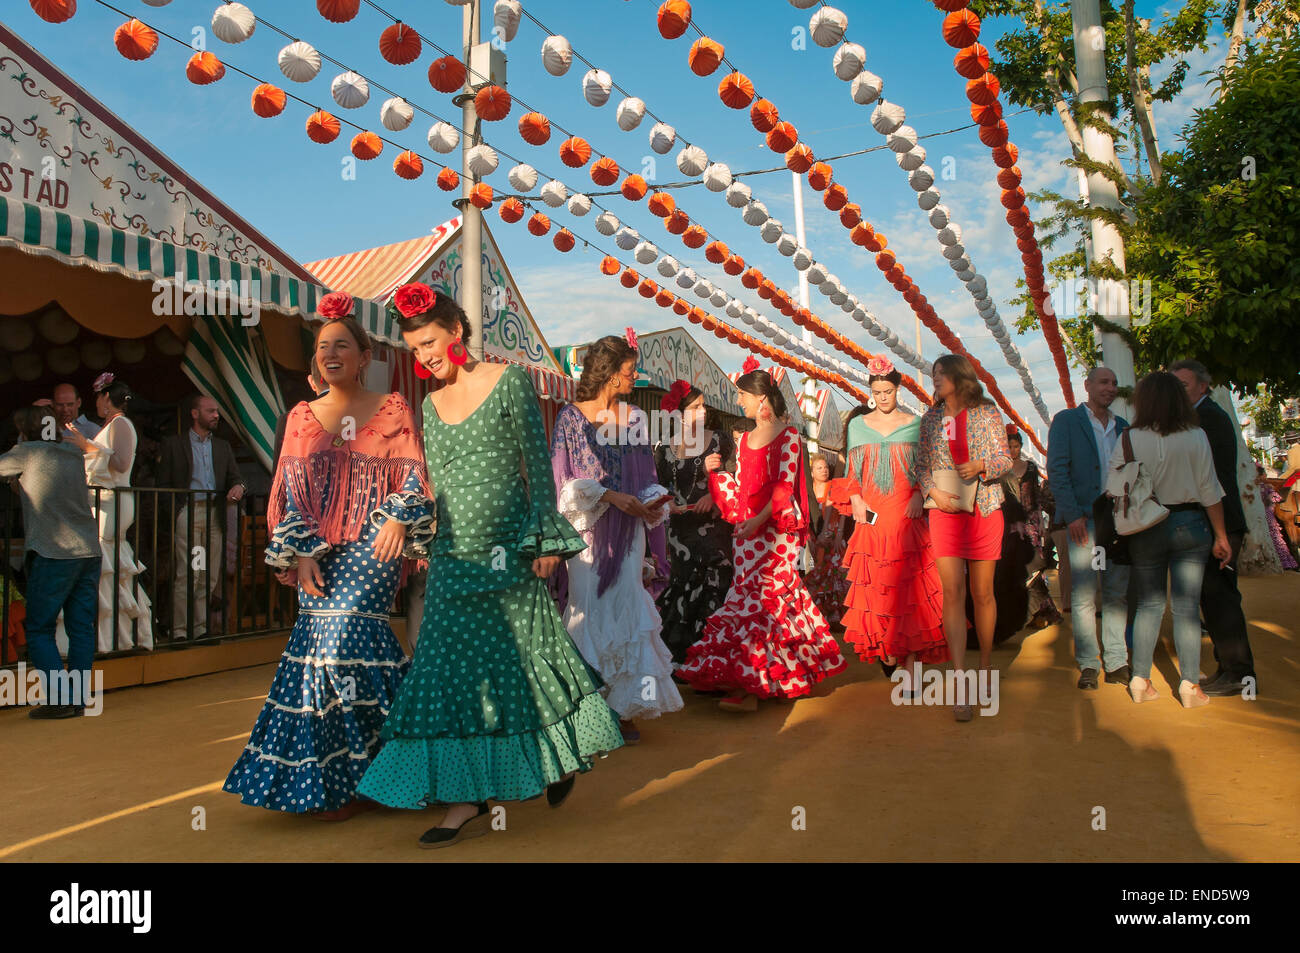 Feria de abril, las mujeres vestidas con el traje de flamenca tradicional, Sevilla, en la región de Andalucía, España, Europa Foto de stock